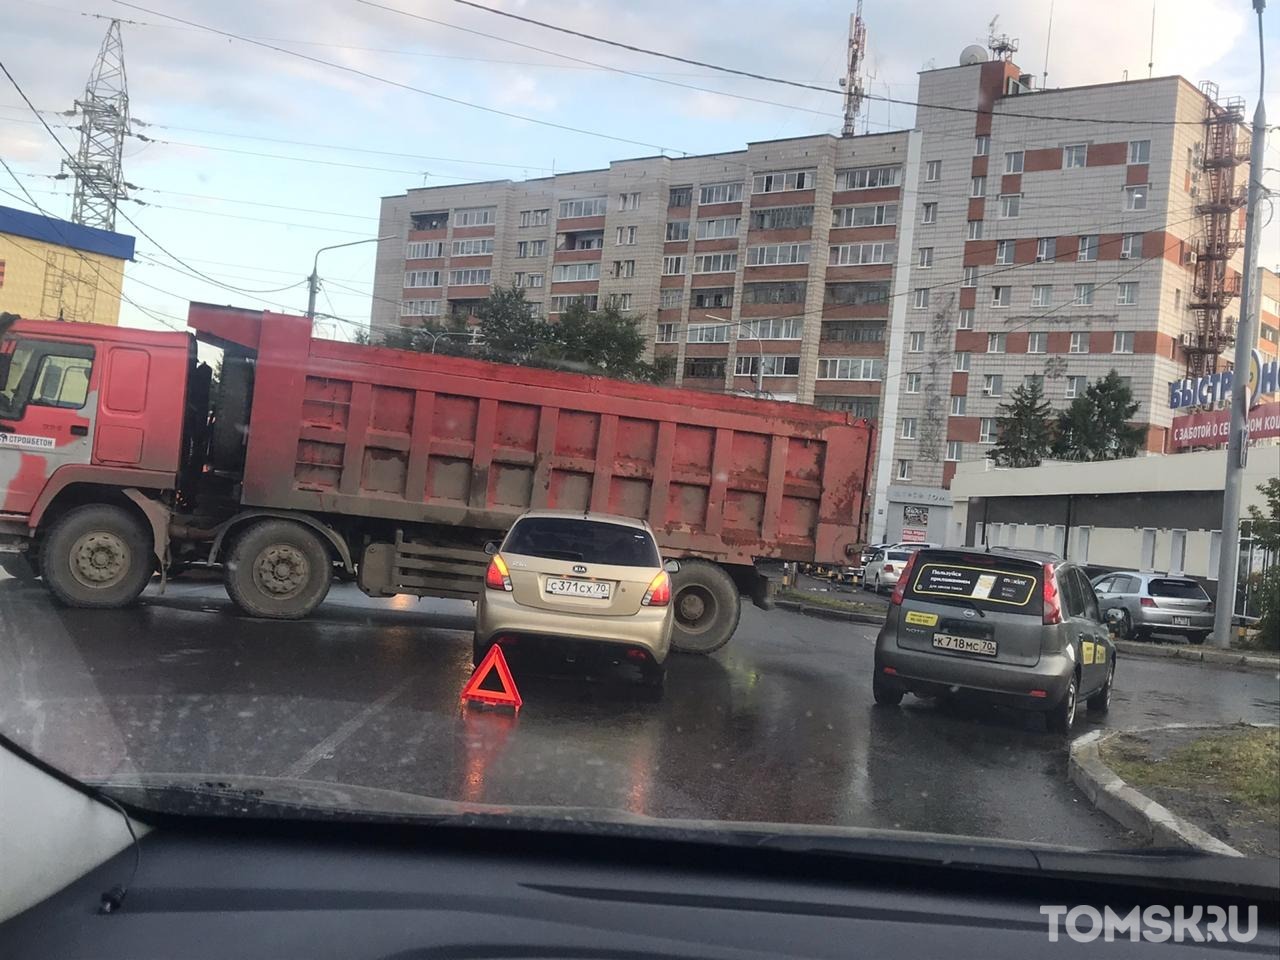 Движение на Степановке заблокировано: дорогу перекрыл грузовик